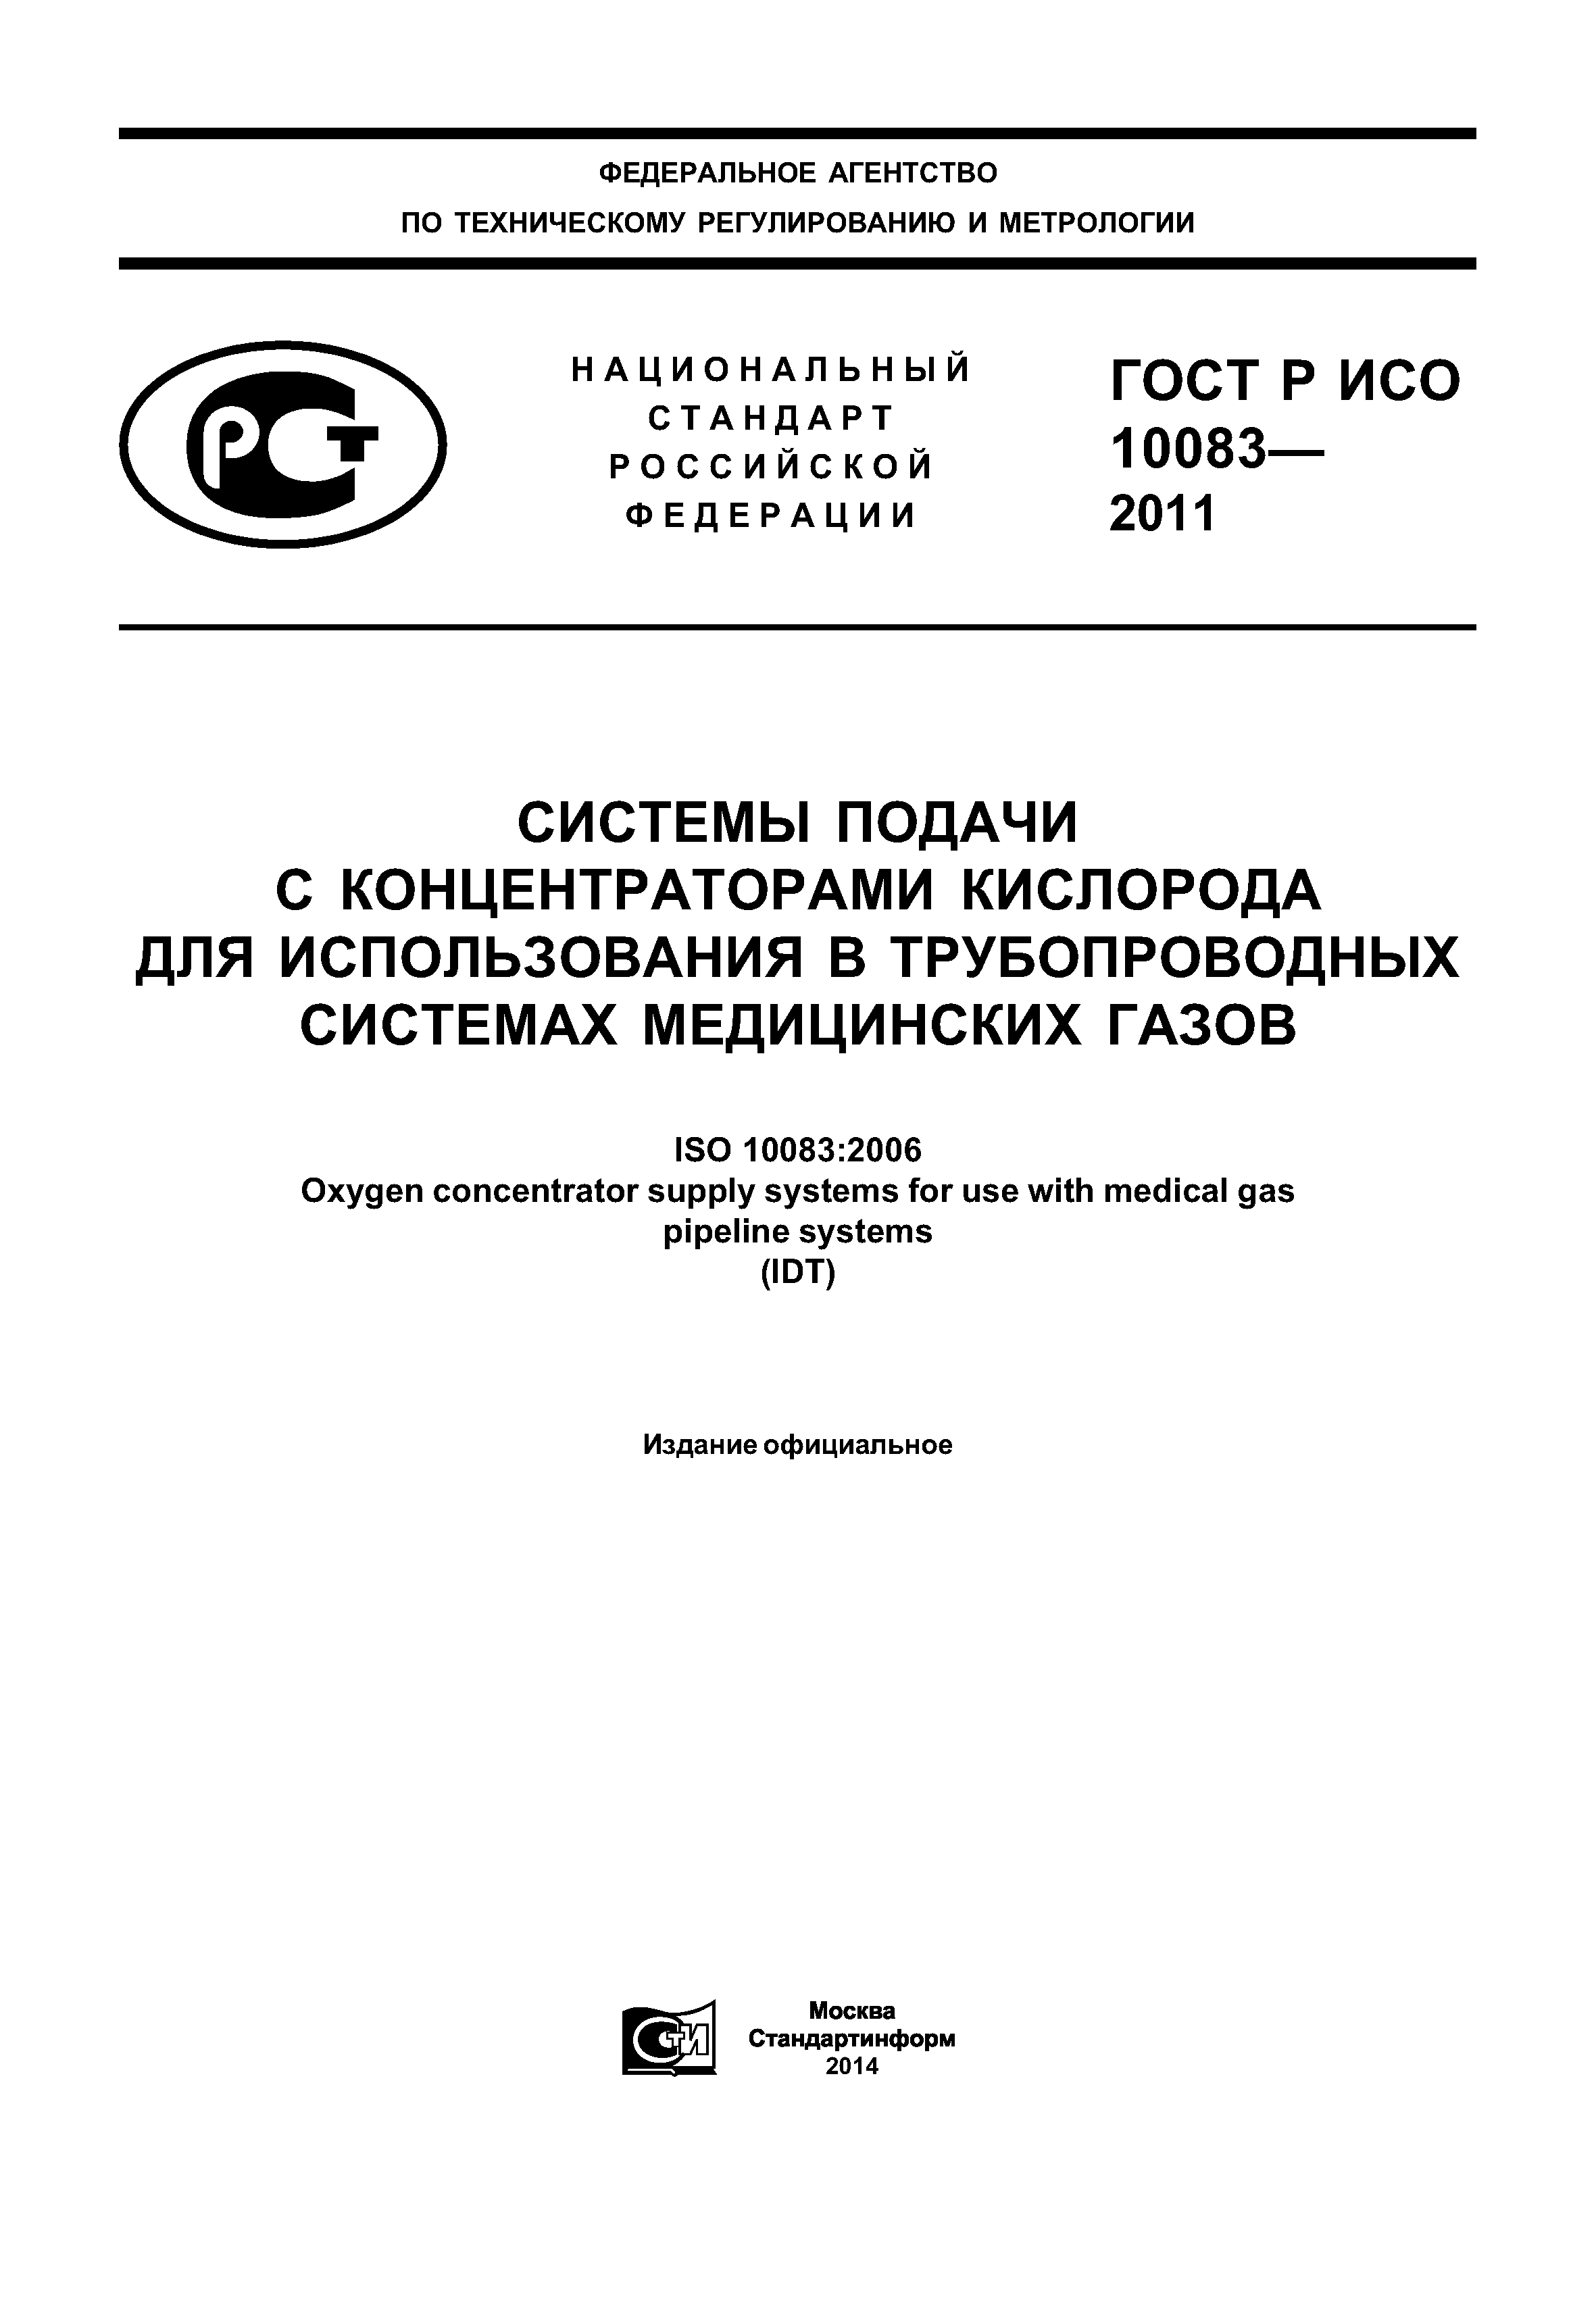 ГОСТ Р ИСО 10083-2011